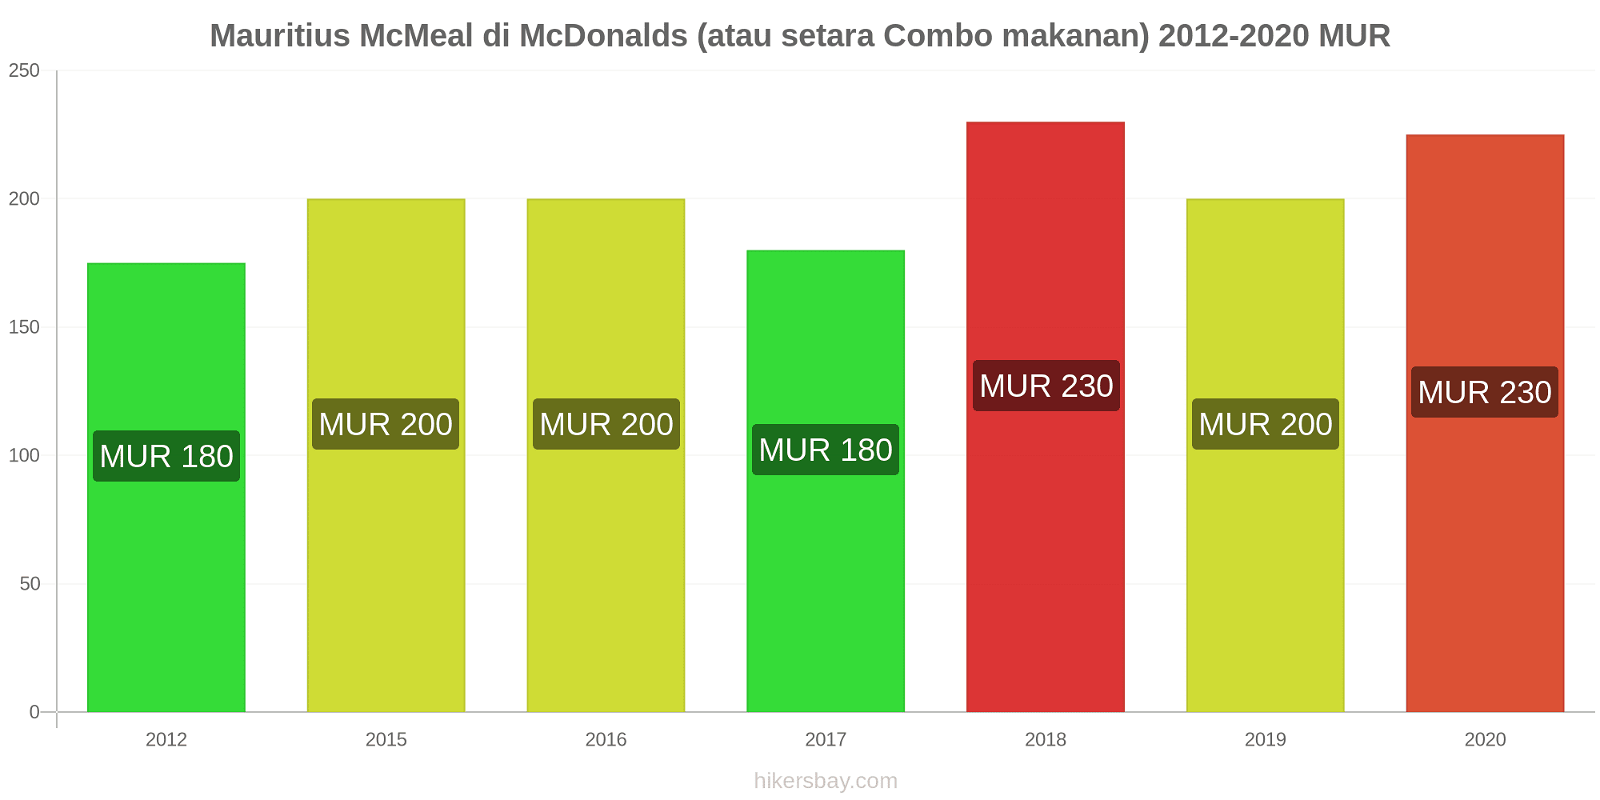 Mauritius perubahan harga McMeal di McDonalds (atau setara Combo makanan) hikersbay.com